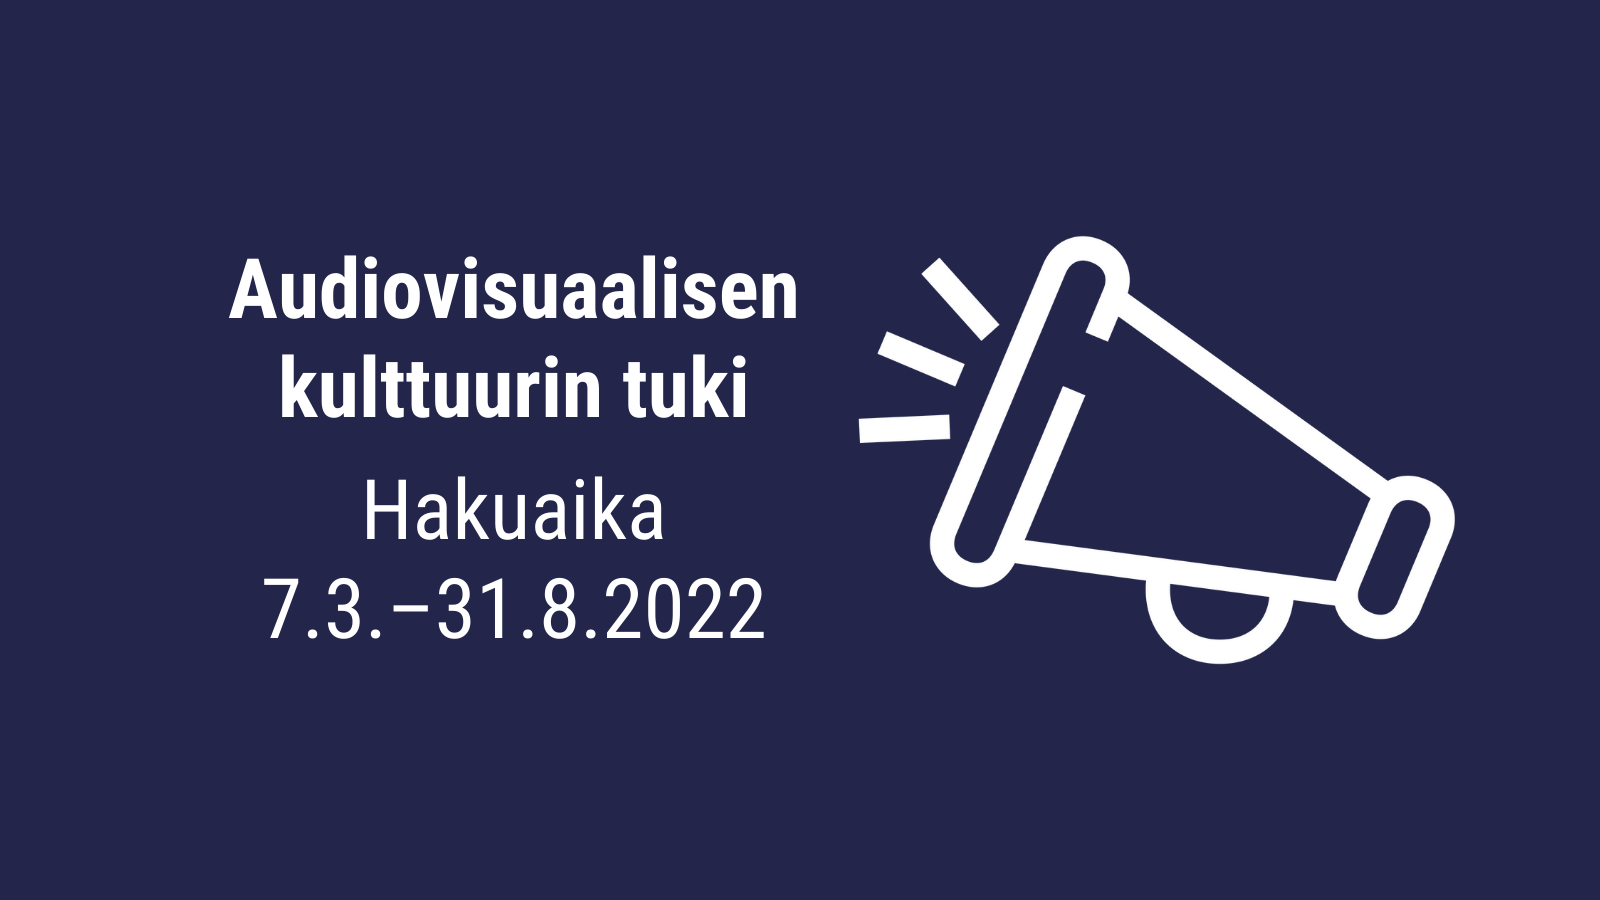 Audiovisuaalisen kulttuurin tuki, hakuaika 7.3.-31.8.2022